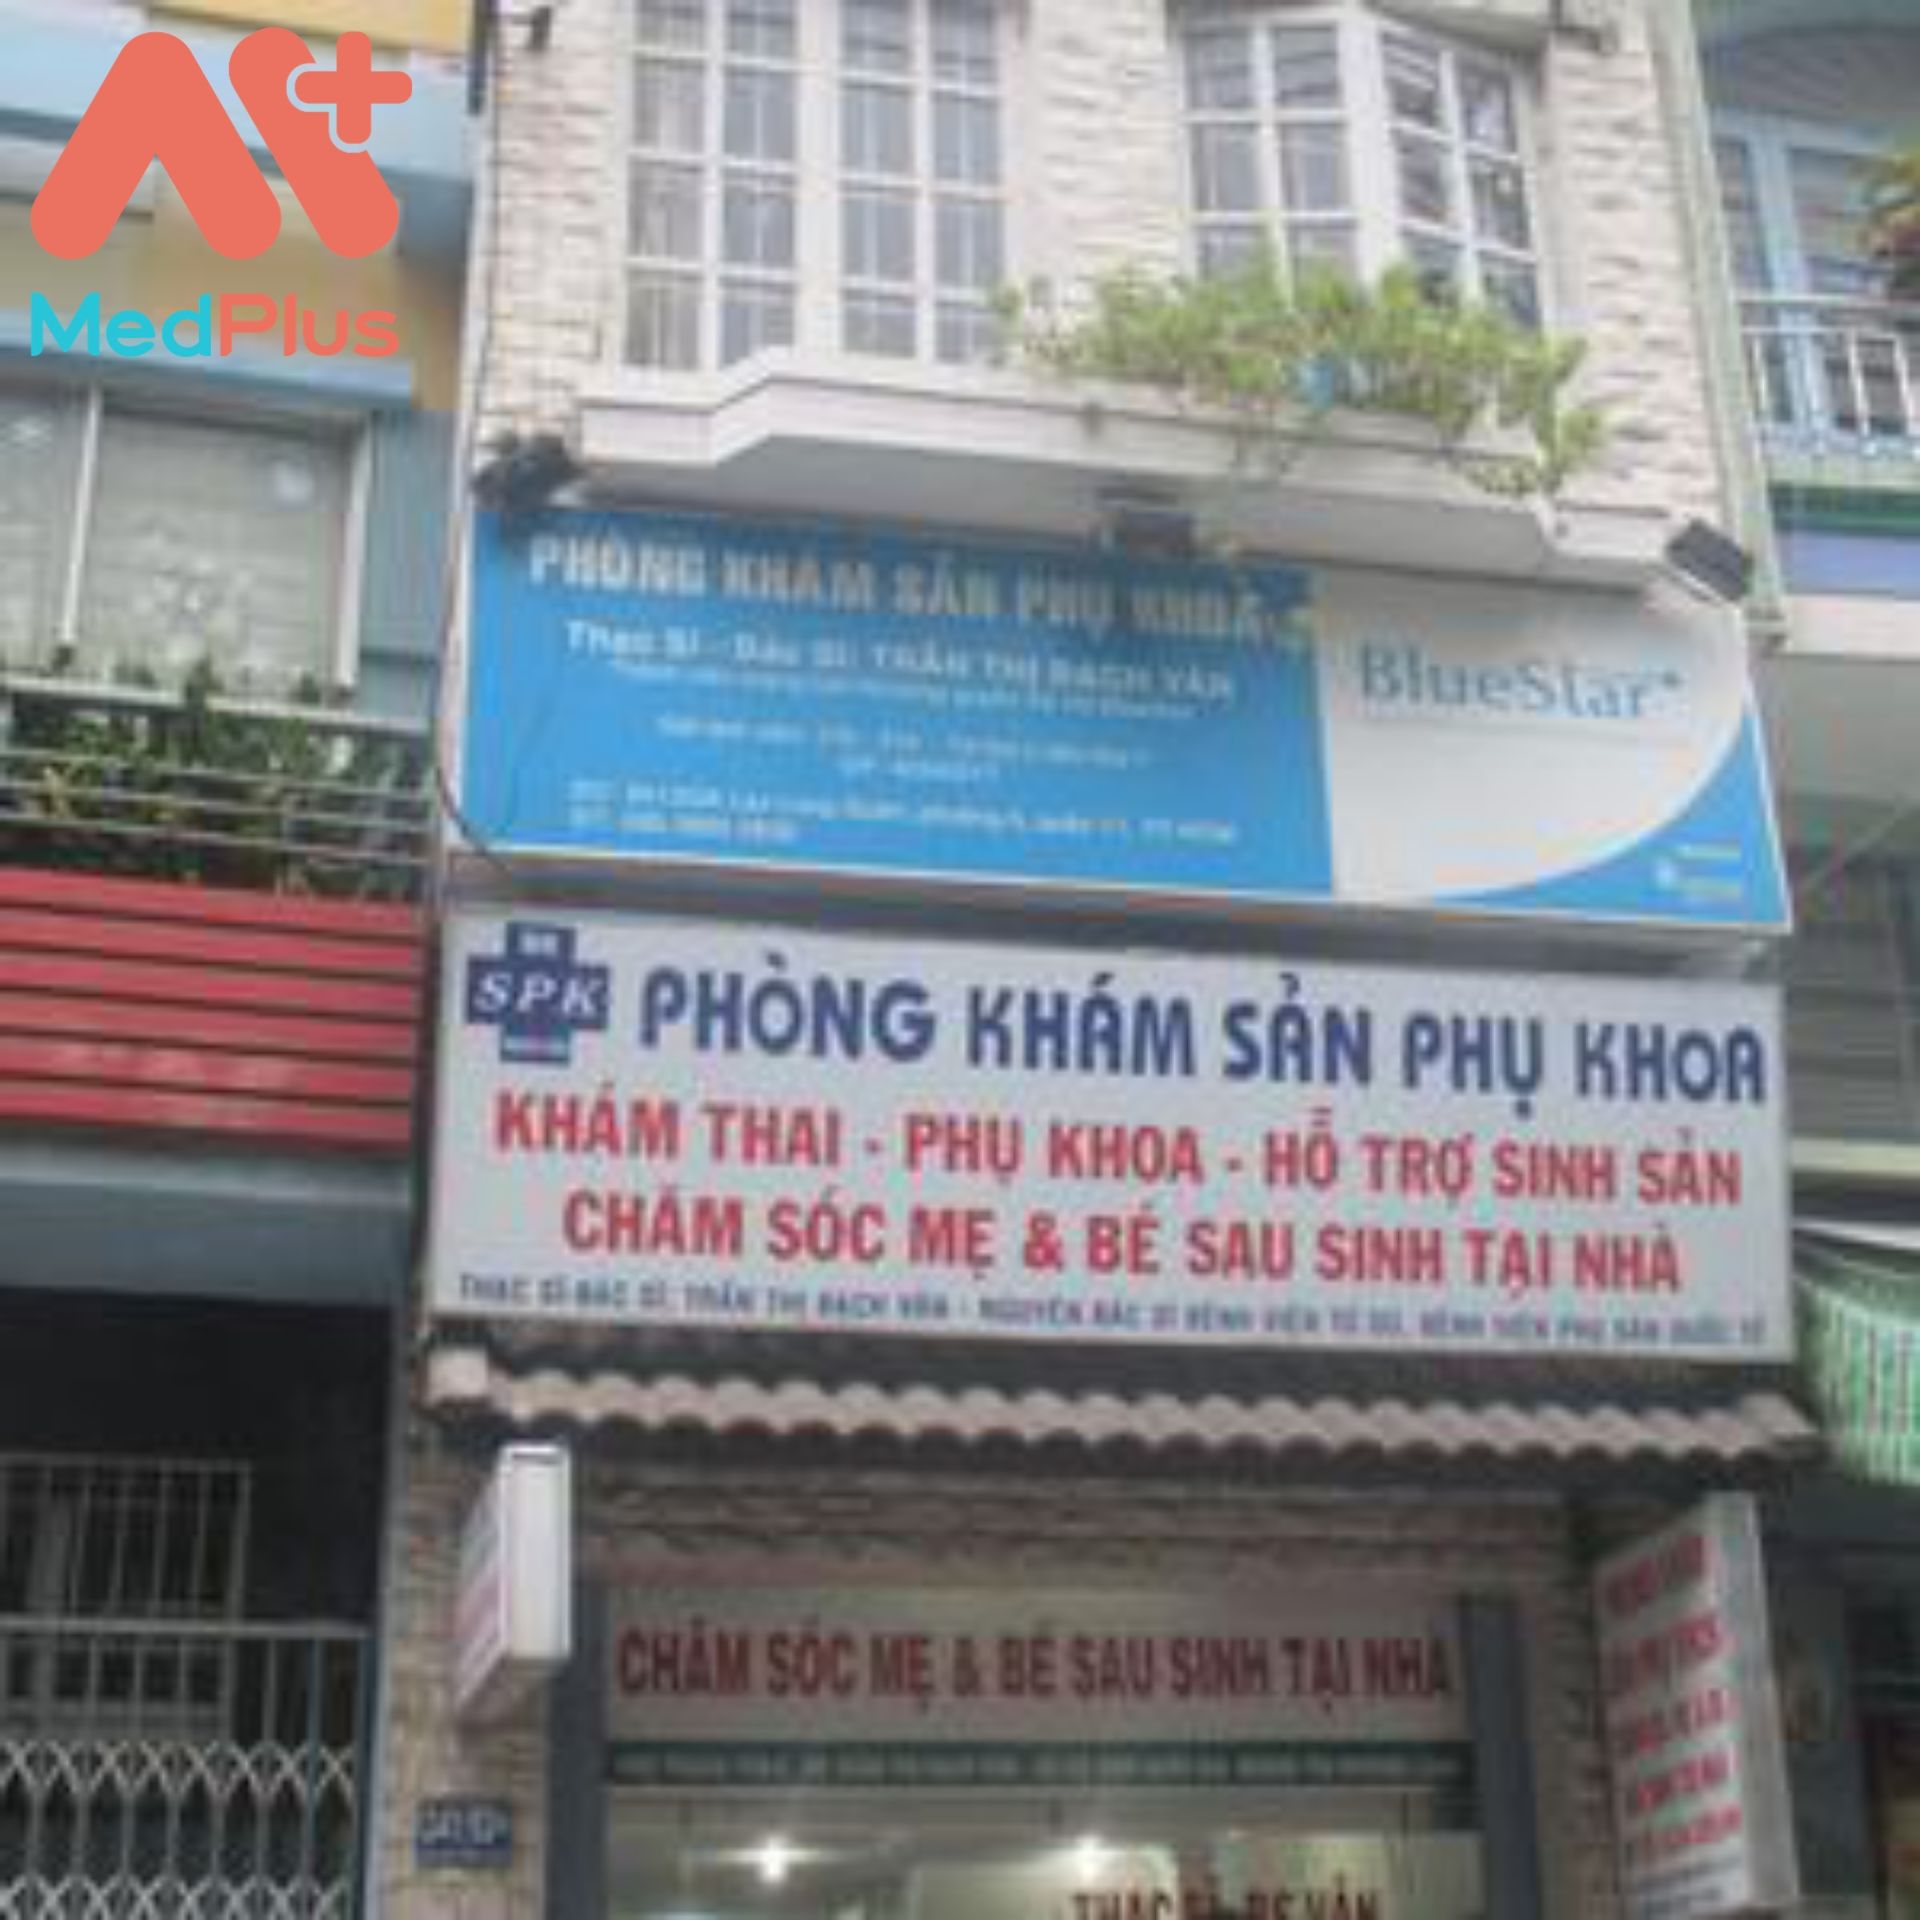 Phòng khám sản phụ khoa và siêu âm Bác sĩ Trần Thị Bạch Vân